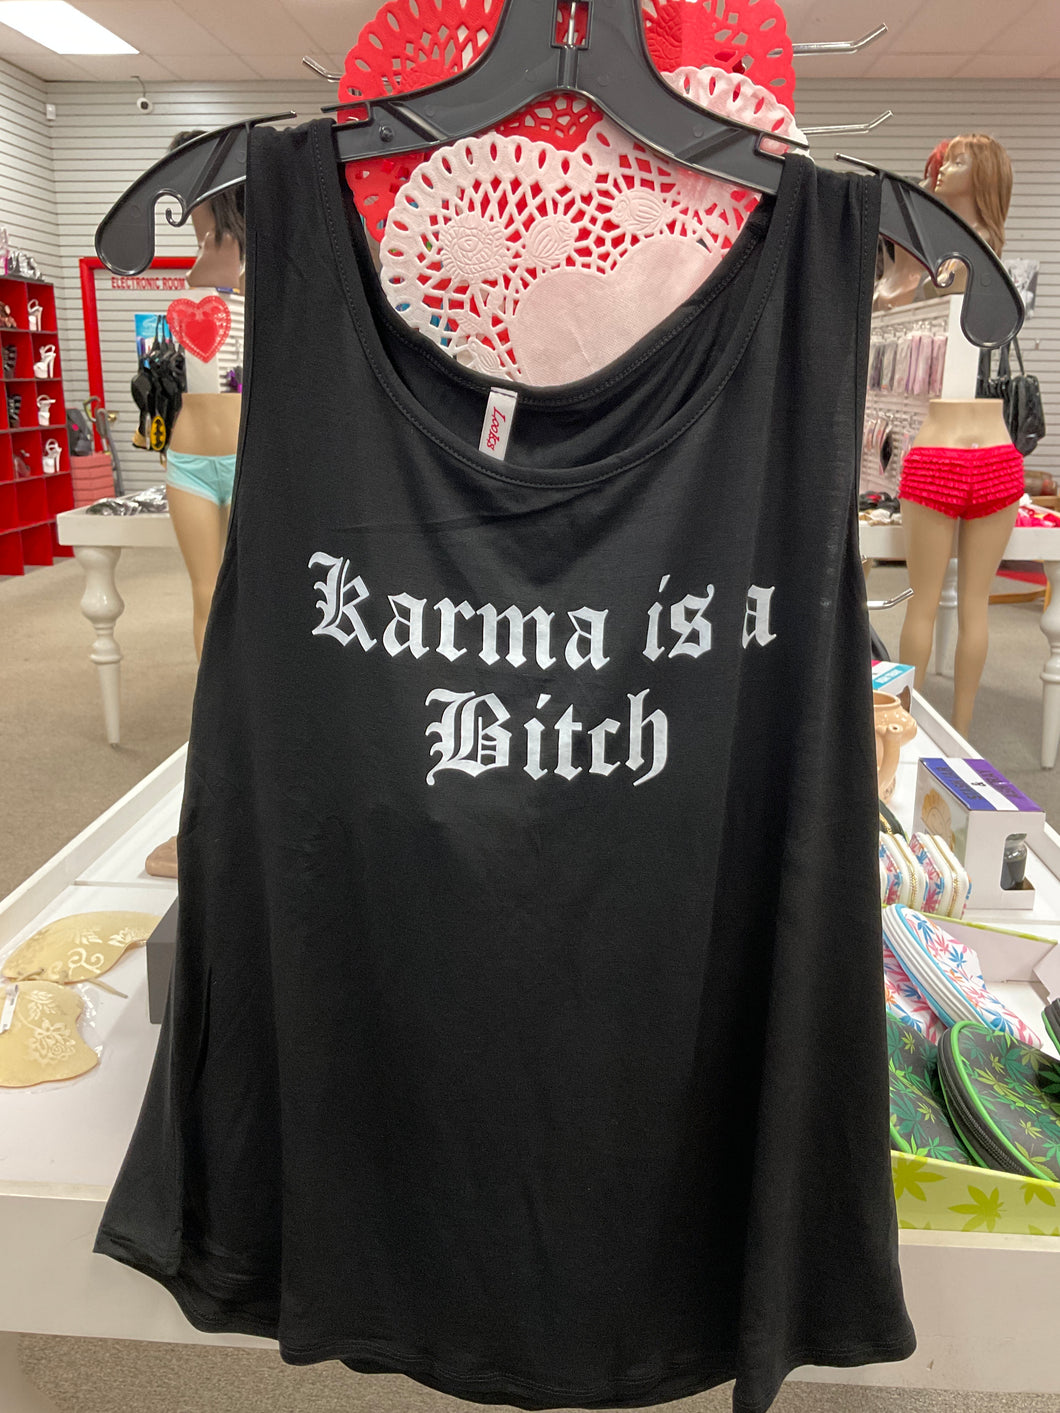 Karma is a b****